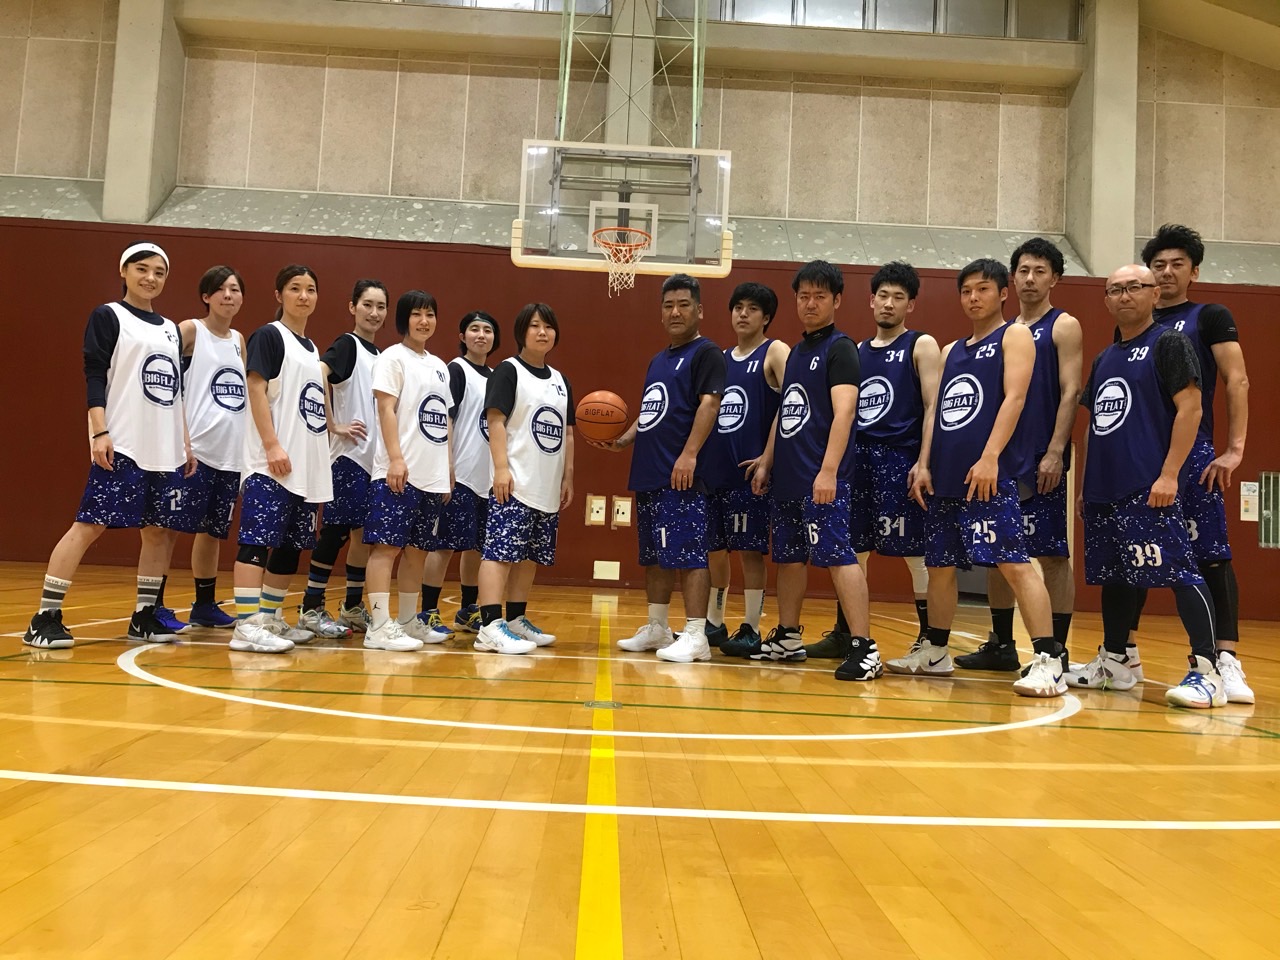 バスケットボール ミニバスケ サークル 教室 イベント情報 仙台スポーツ情報ナビ